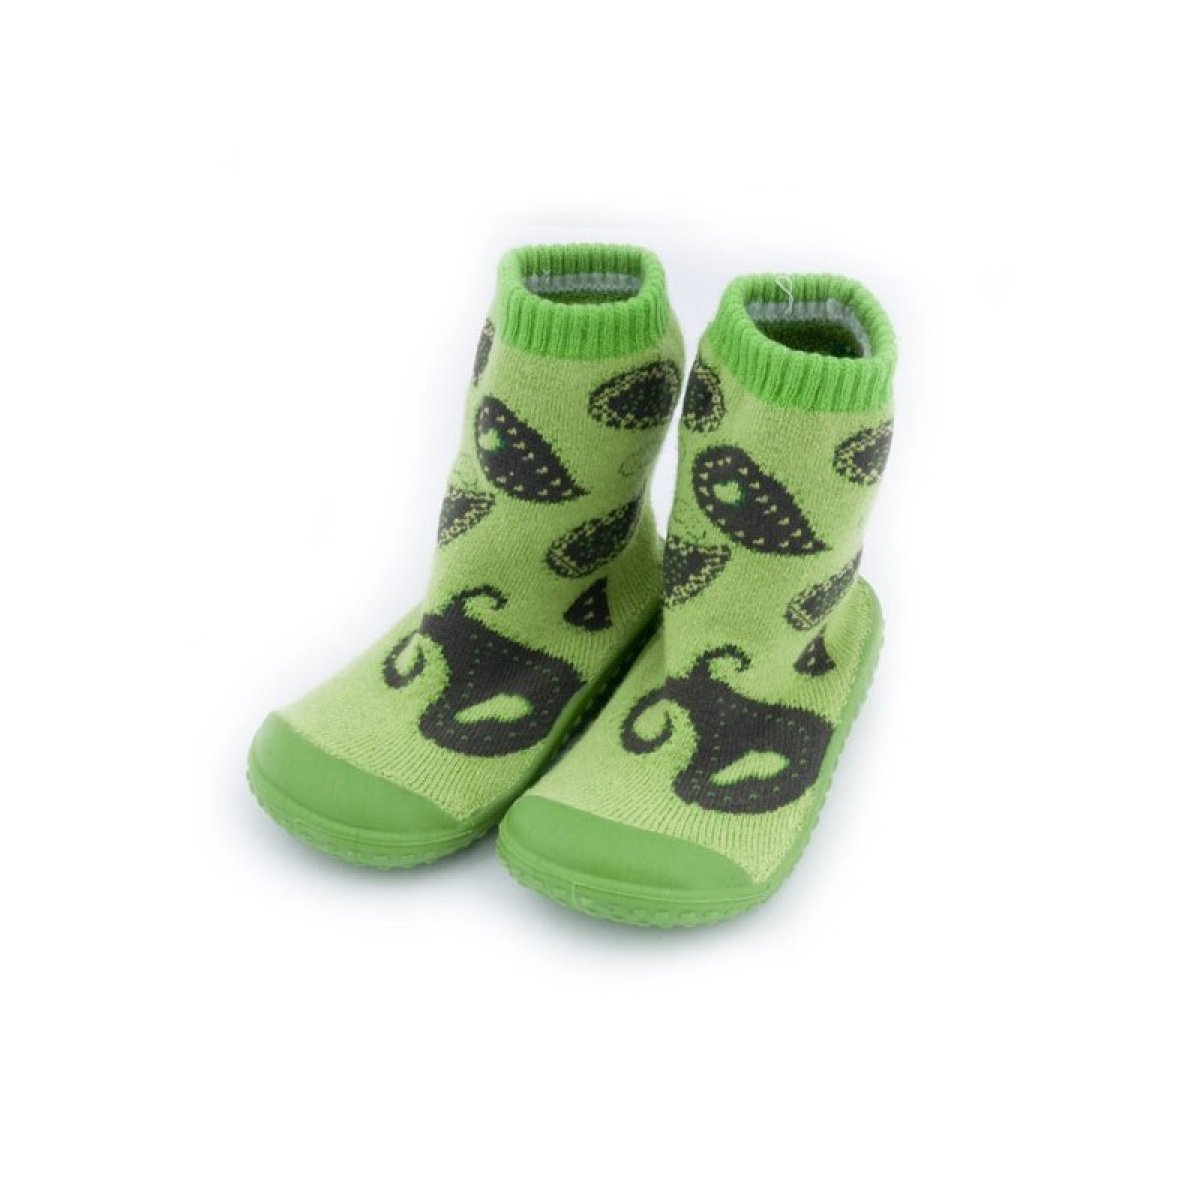 Froté ponožky pro děti s gumovou podrážkou - KDI 006 - green